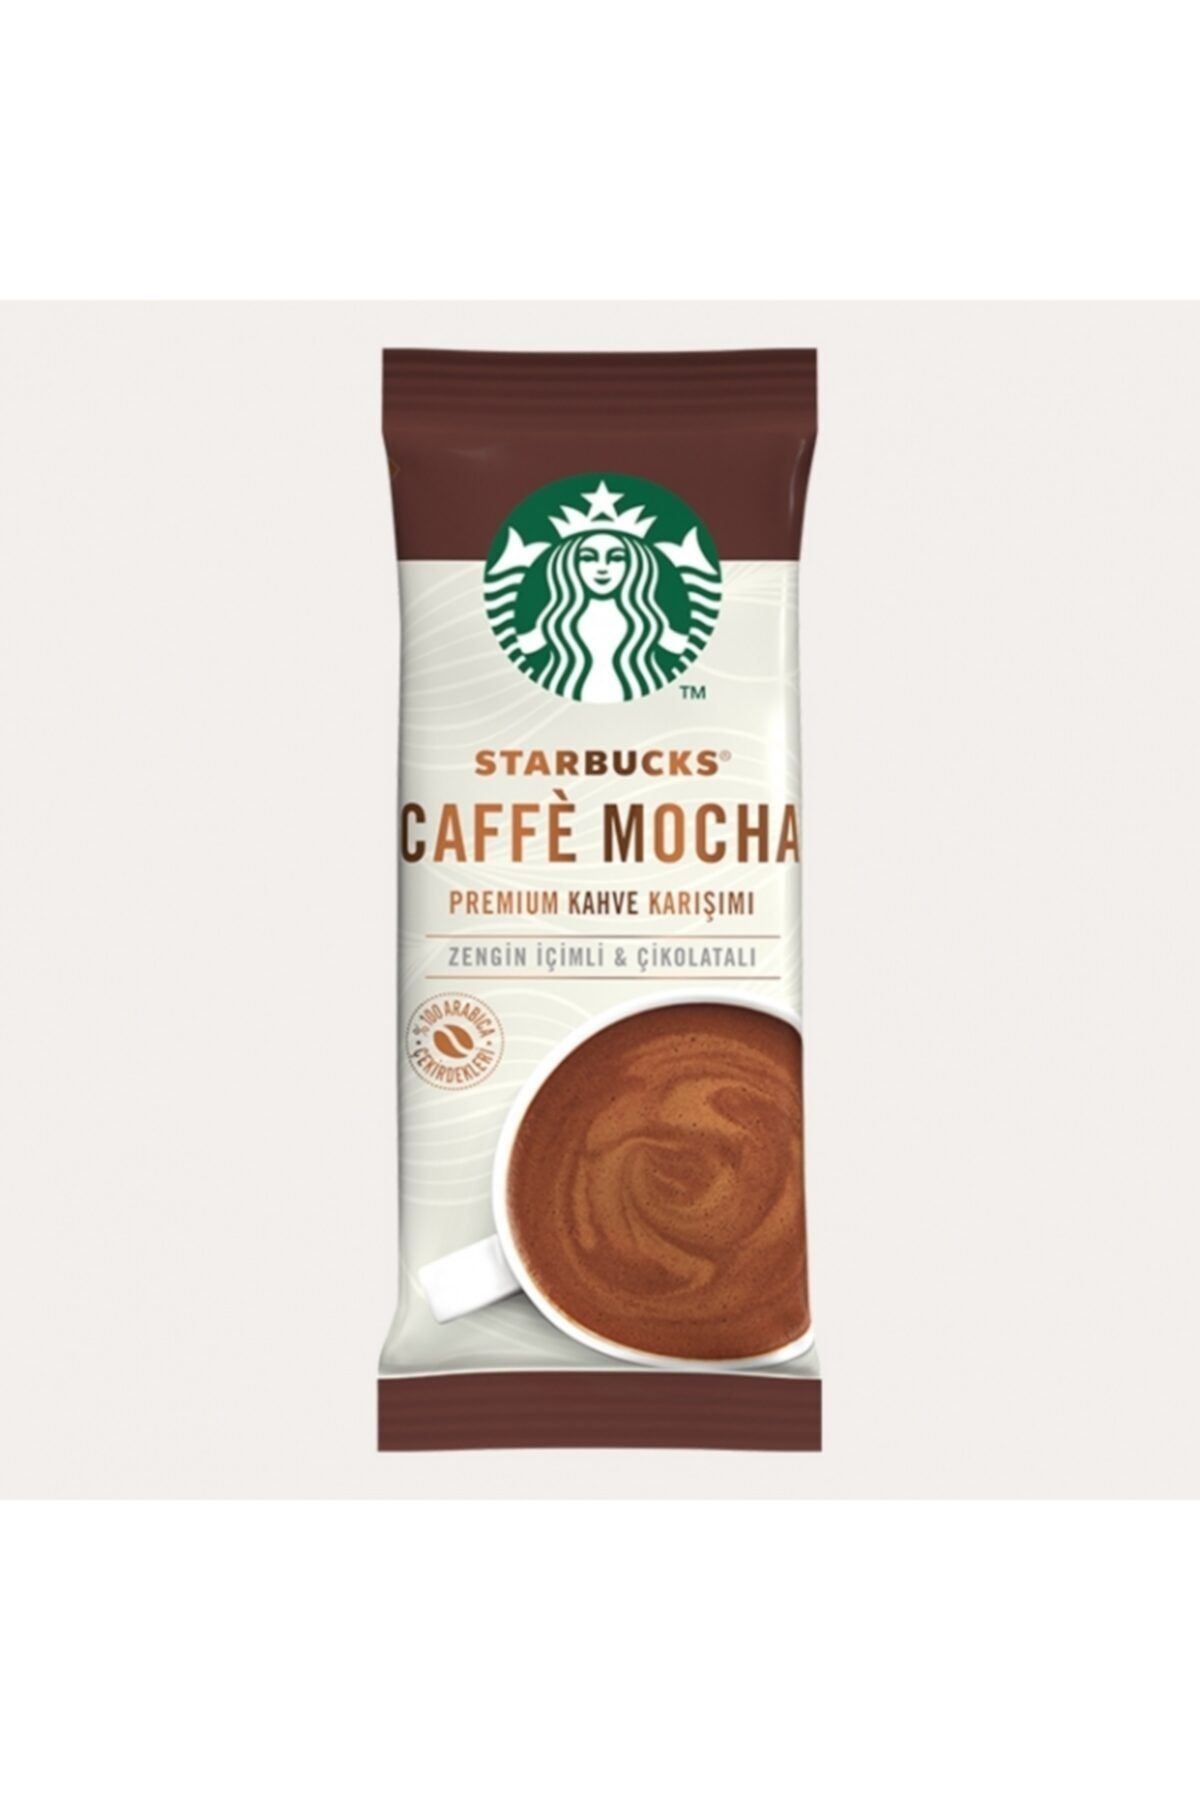 Starbucks Caffe Mocha Sınırlı Üretim Premium Kahve Karışımı 22 gr